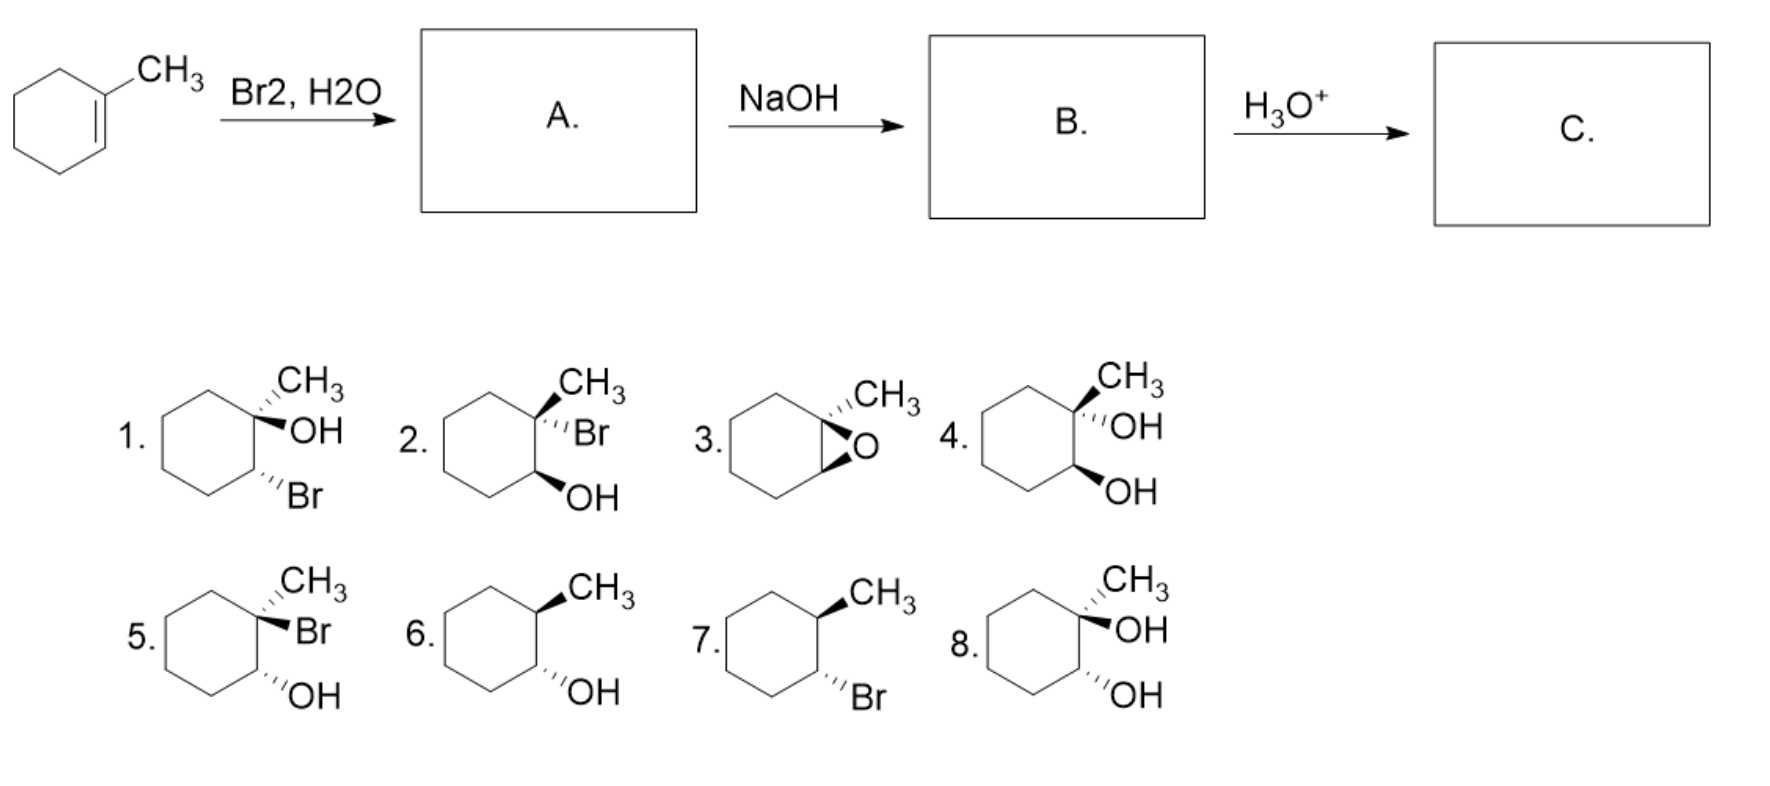 Ch ch h2o h. Циклогексан +2br2. Бензол ch3cl. Сн2 br ch3 +h2o. Бензол + н2.